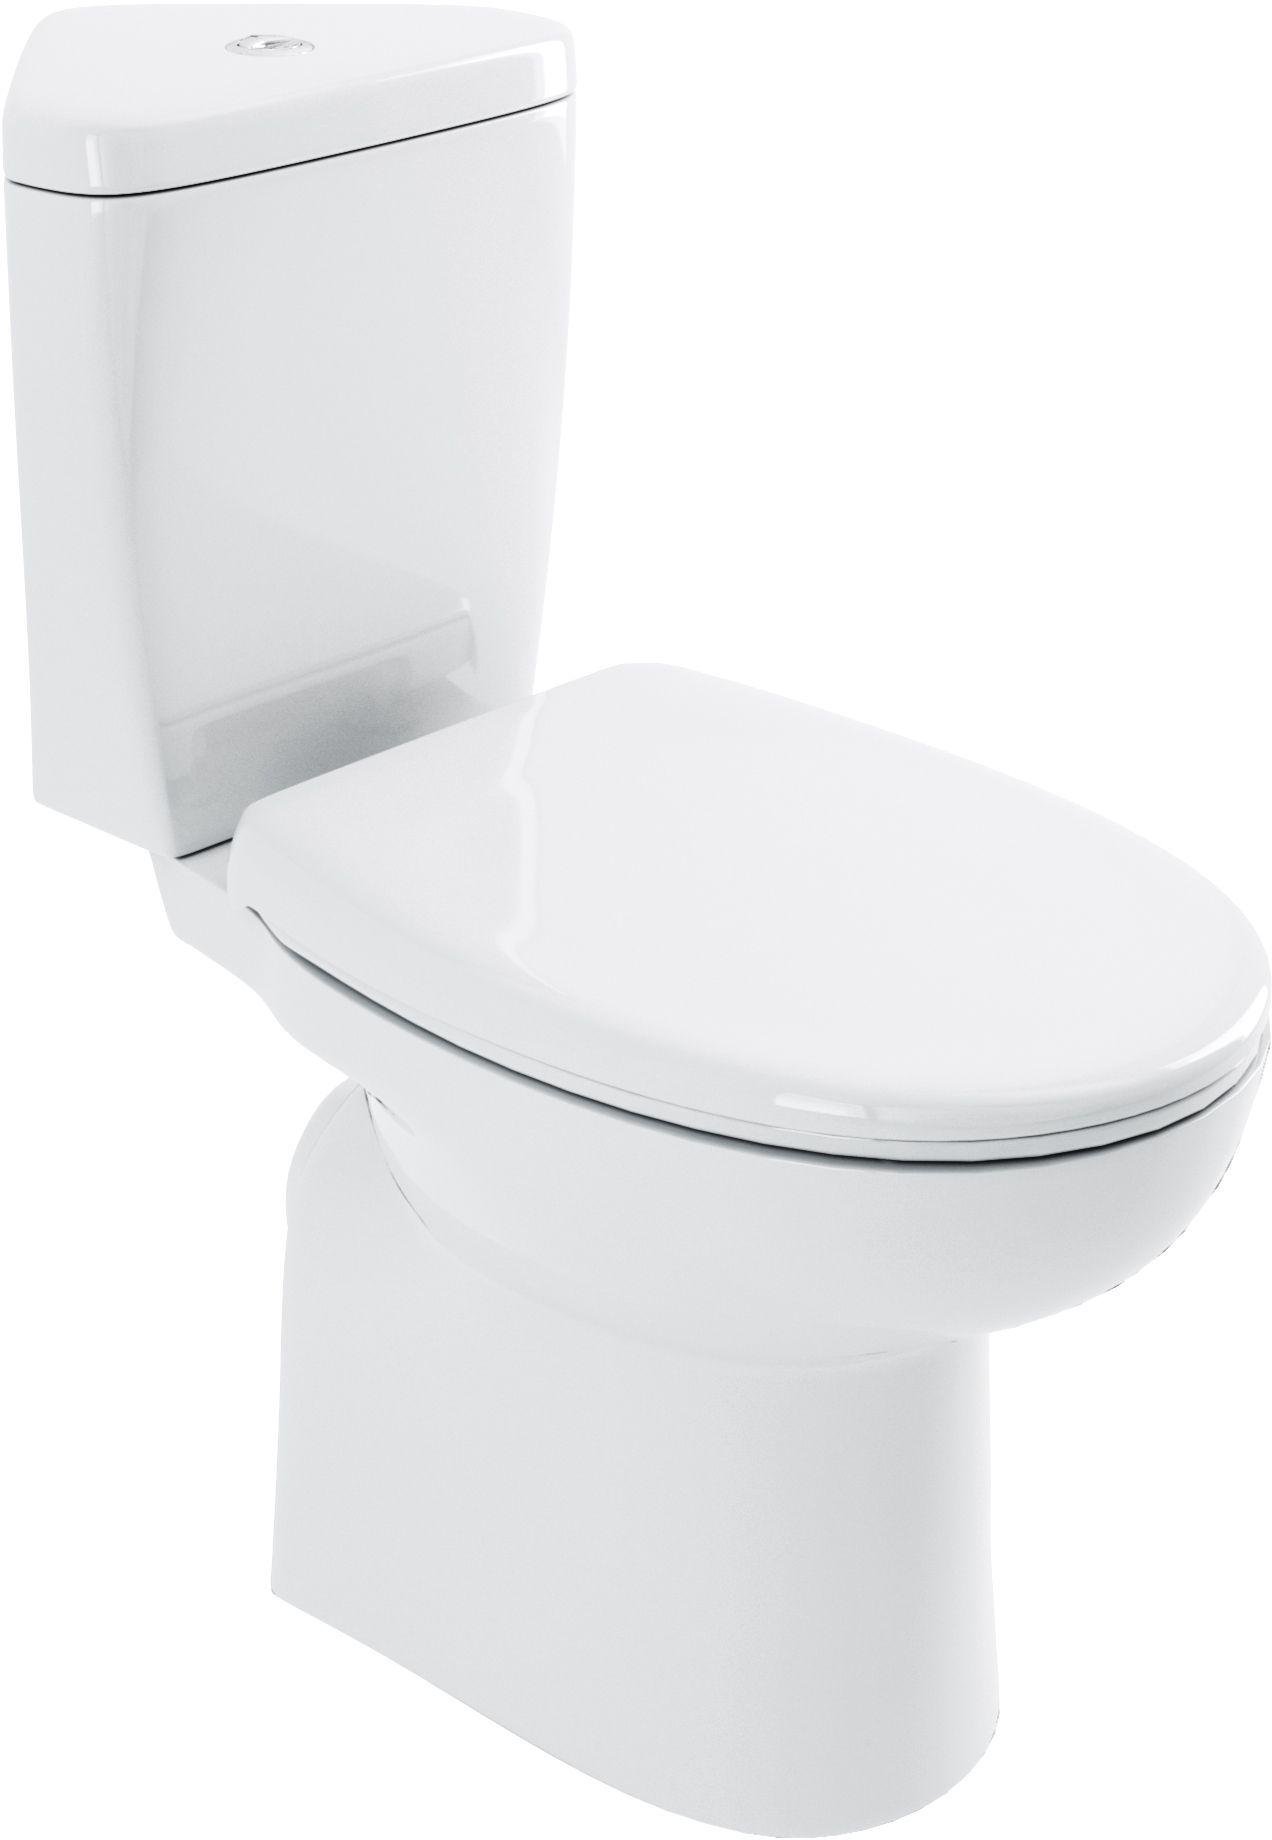 Lavari Minispace Corner Toilet and Standard Seat